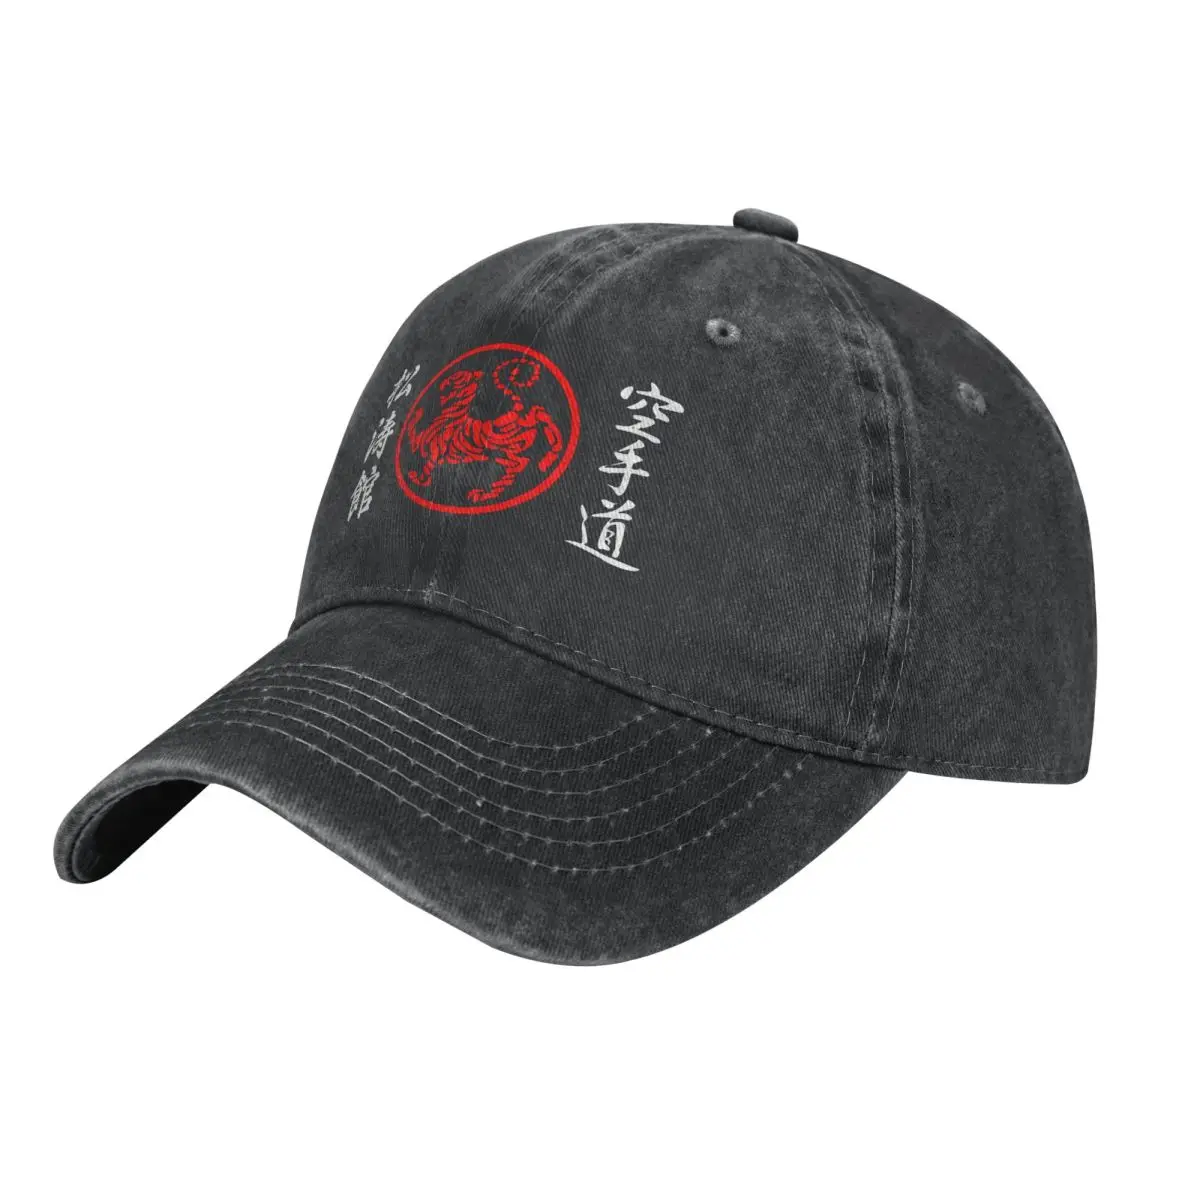 

Shotokan символ и Kanji по бокам белый текст папа шляпа животные ковбойская шляпа шляпы хип-хоп кепки солнцезащитные шляпы Снэпбэк кепки